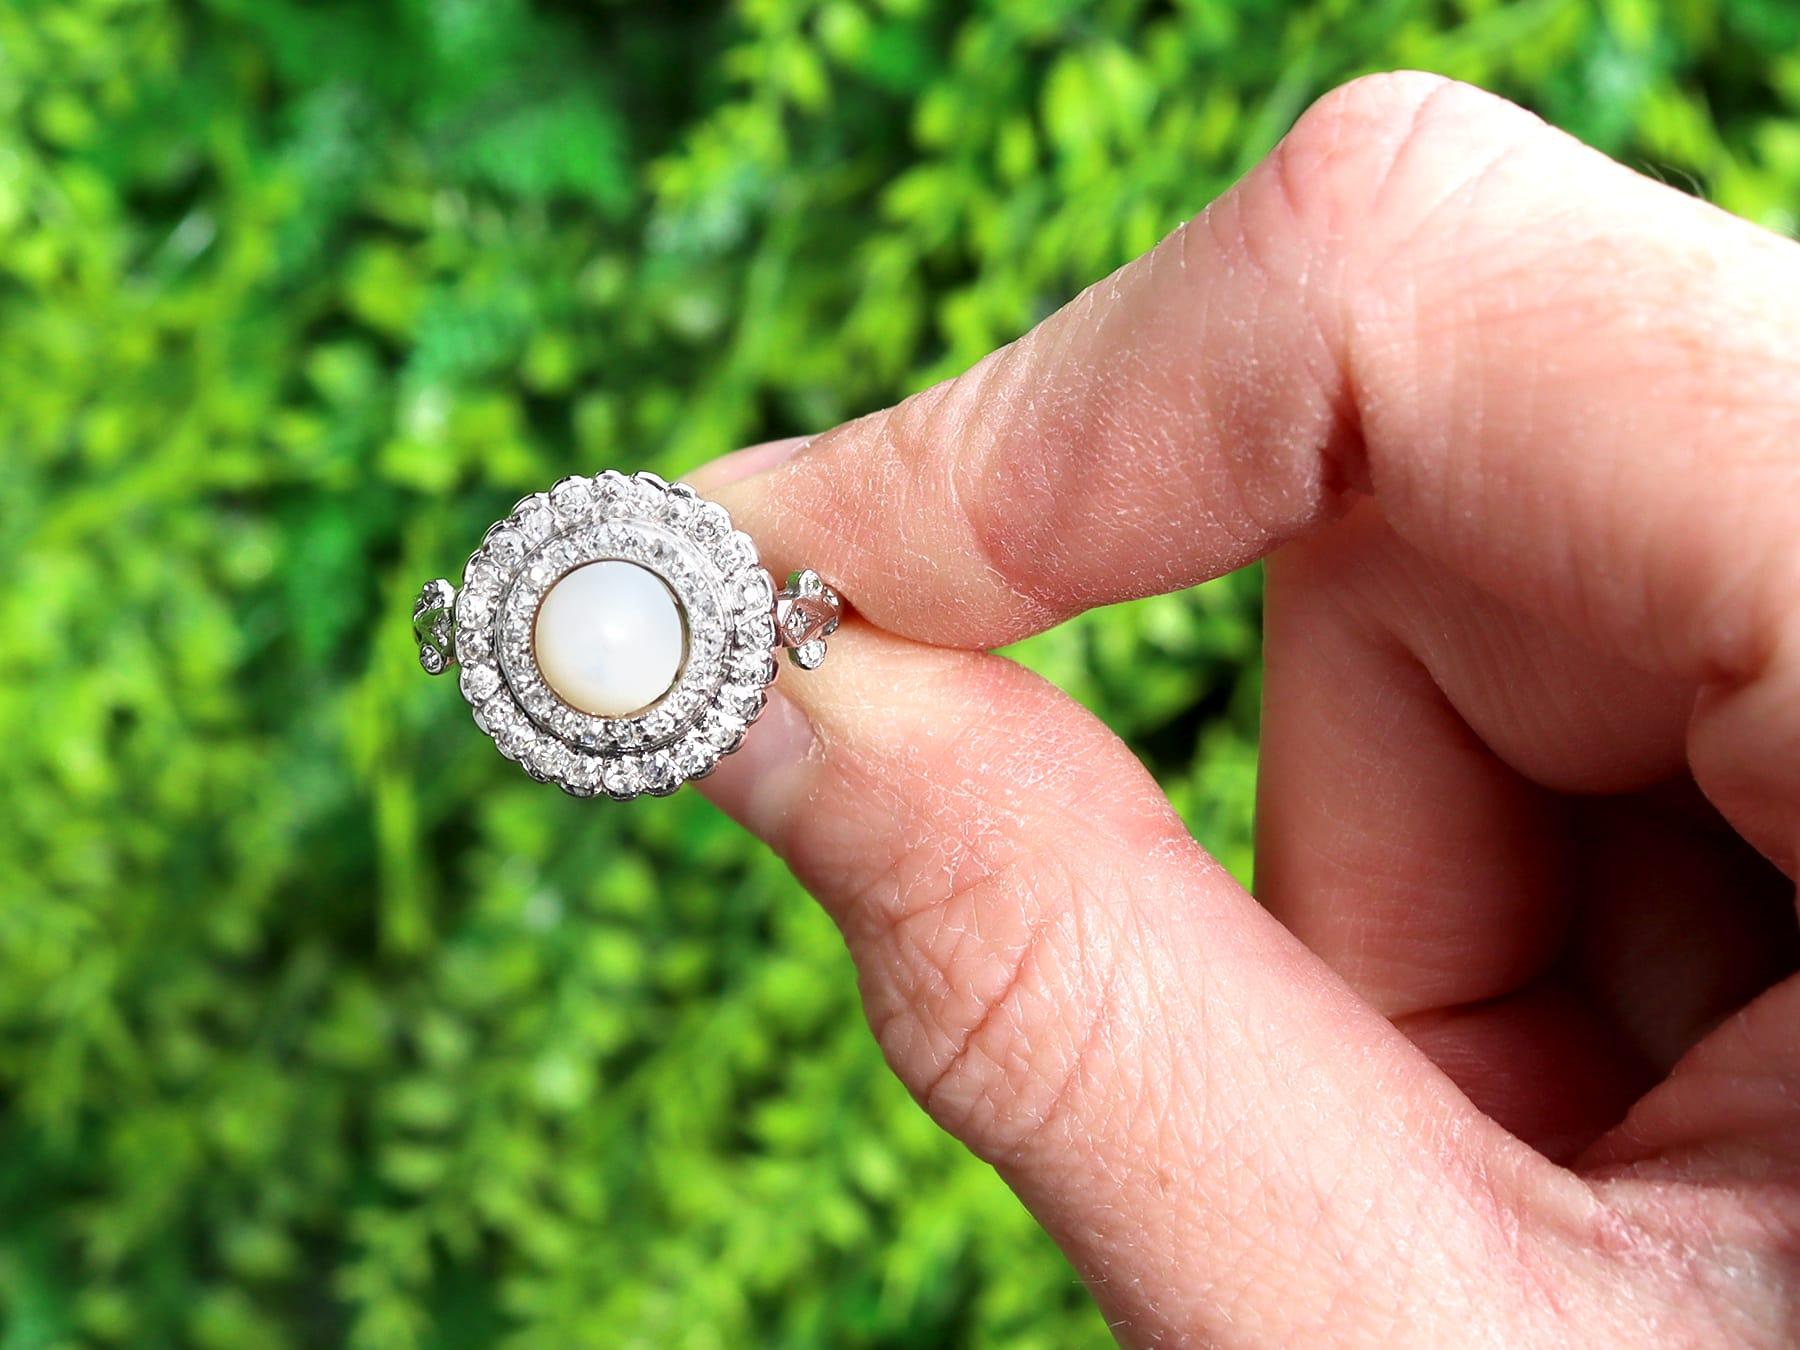 Une belle et impressionnante bague cible en or blanc 18 carats, ornée d'une perle et d'un diamant de 0,76 carat, datant des années 1910, qui fait partie de nos diverses collections de bijoux anciens et de bijoux de succession.

Cette belle et